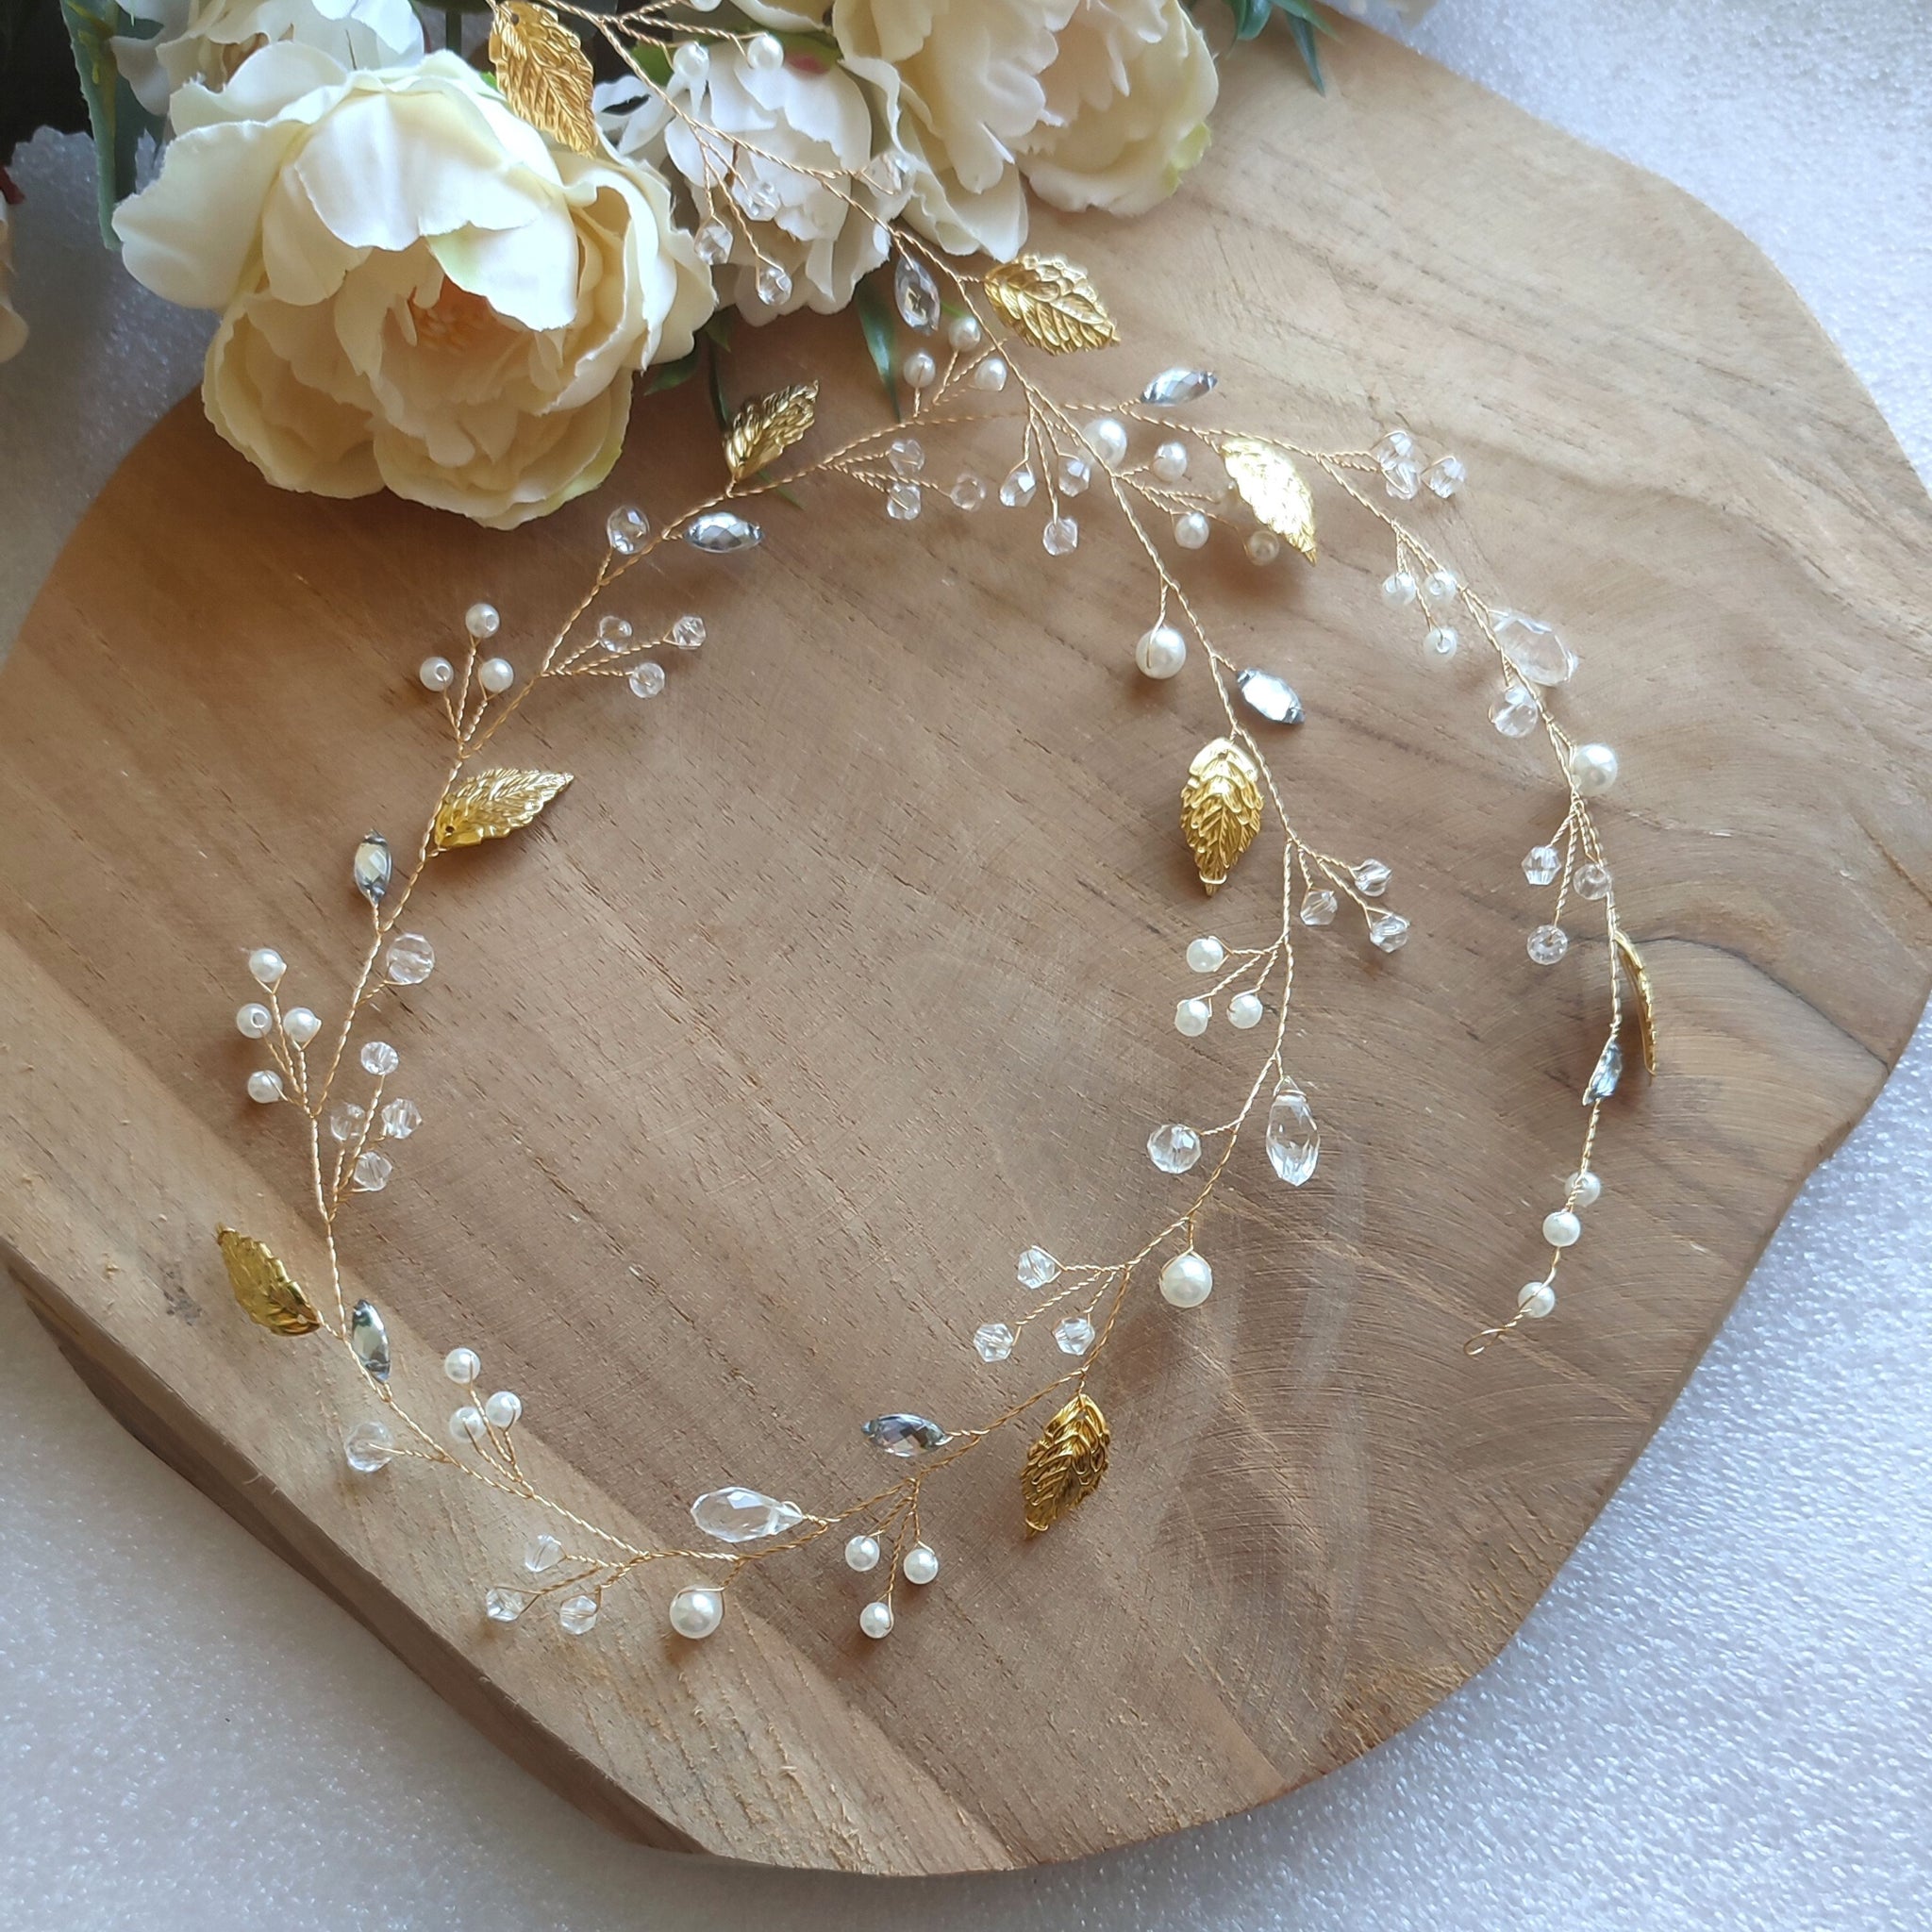 Headband pour la mariée bohème, avec perles et feuille dorée.